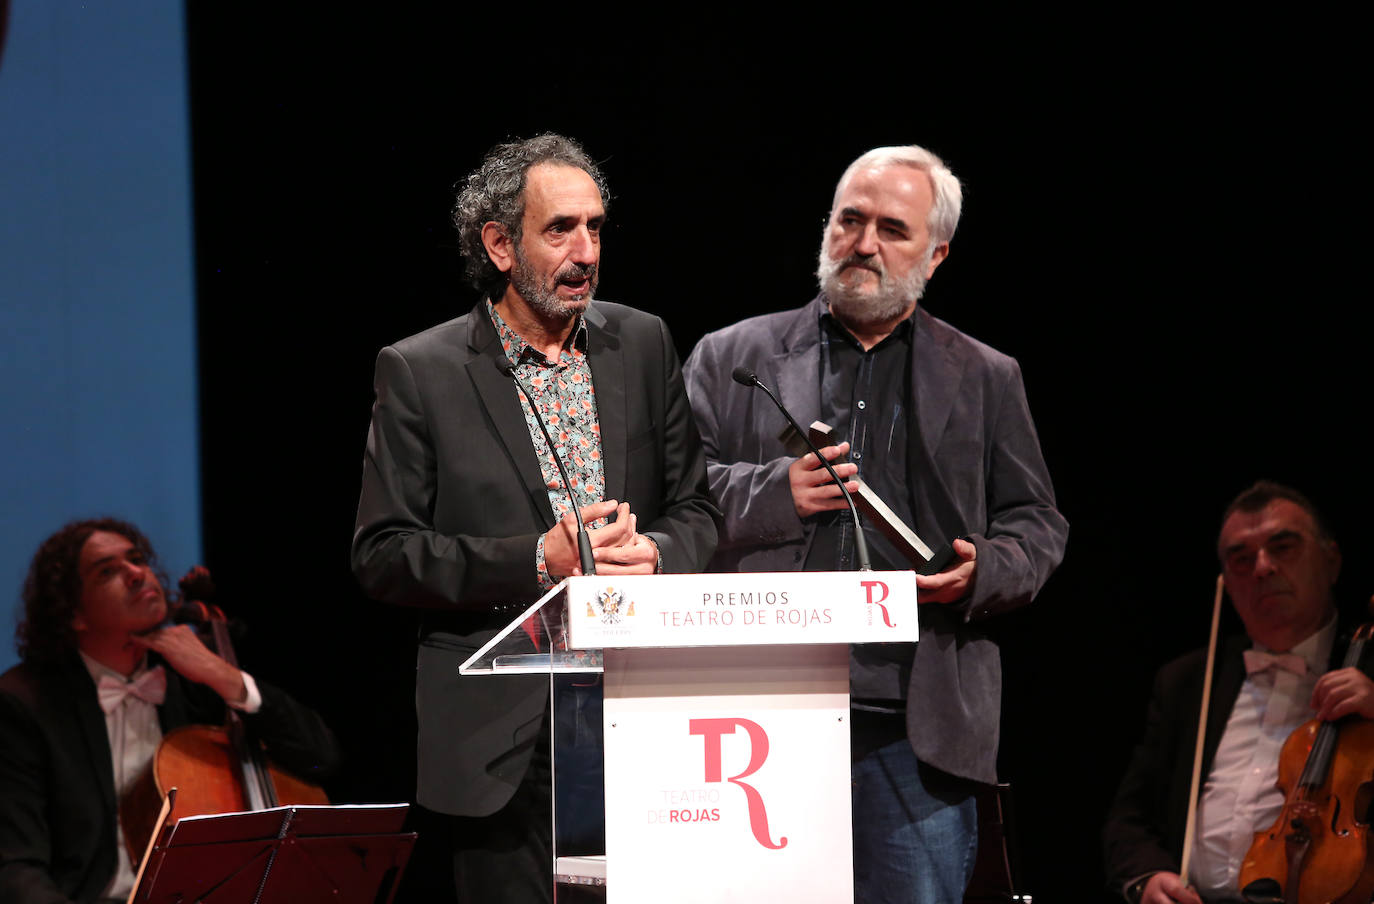 La 29ª edición de los Premios del Teatro de Rojas, en imágenes